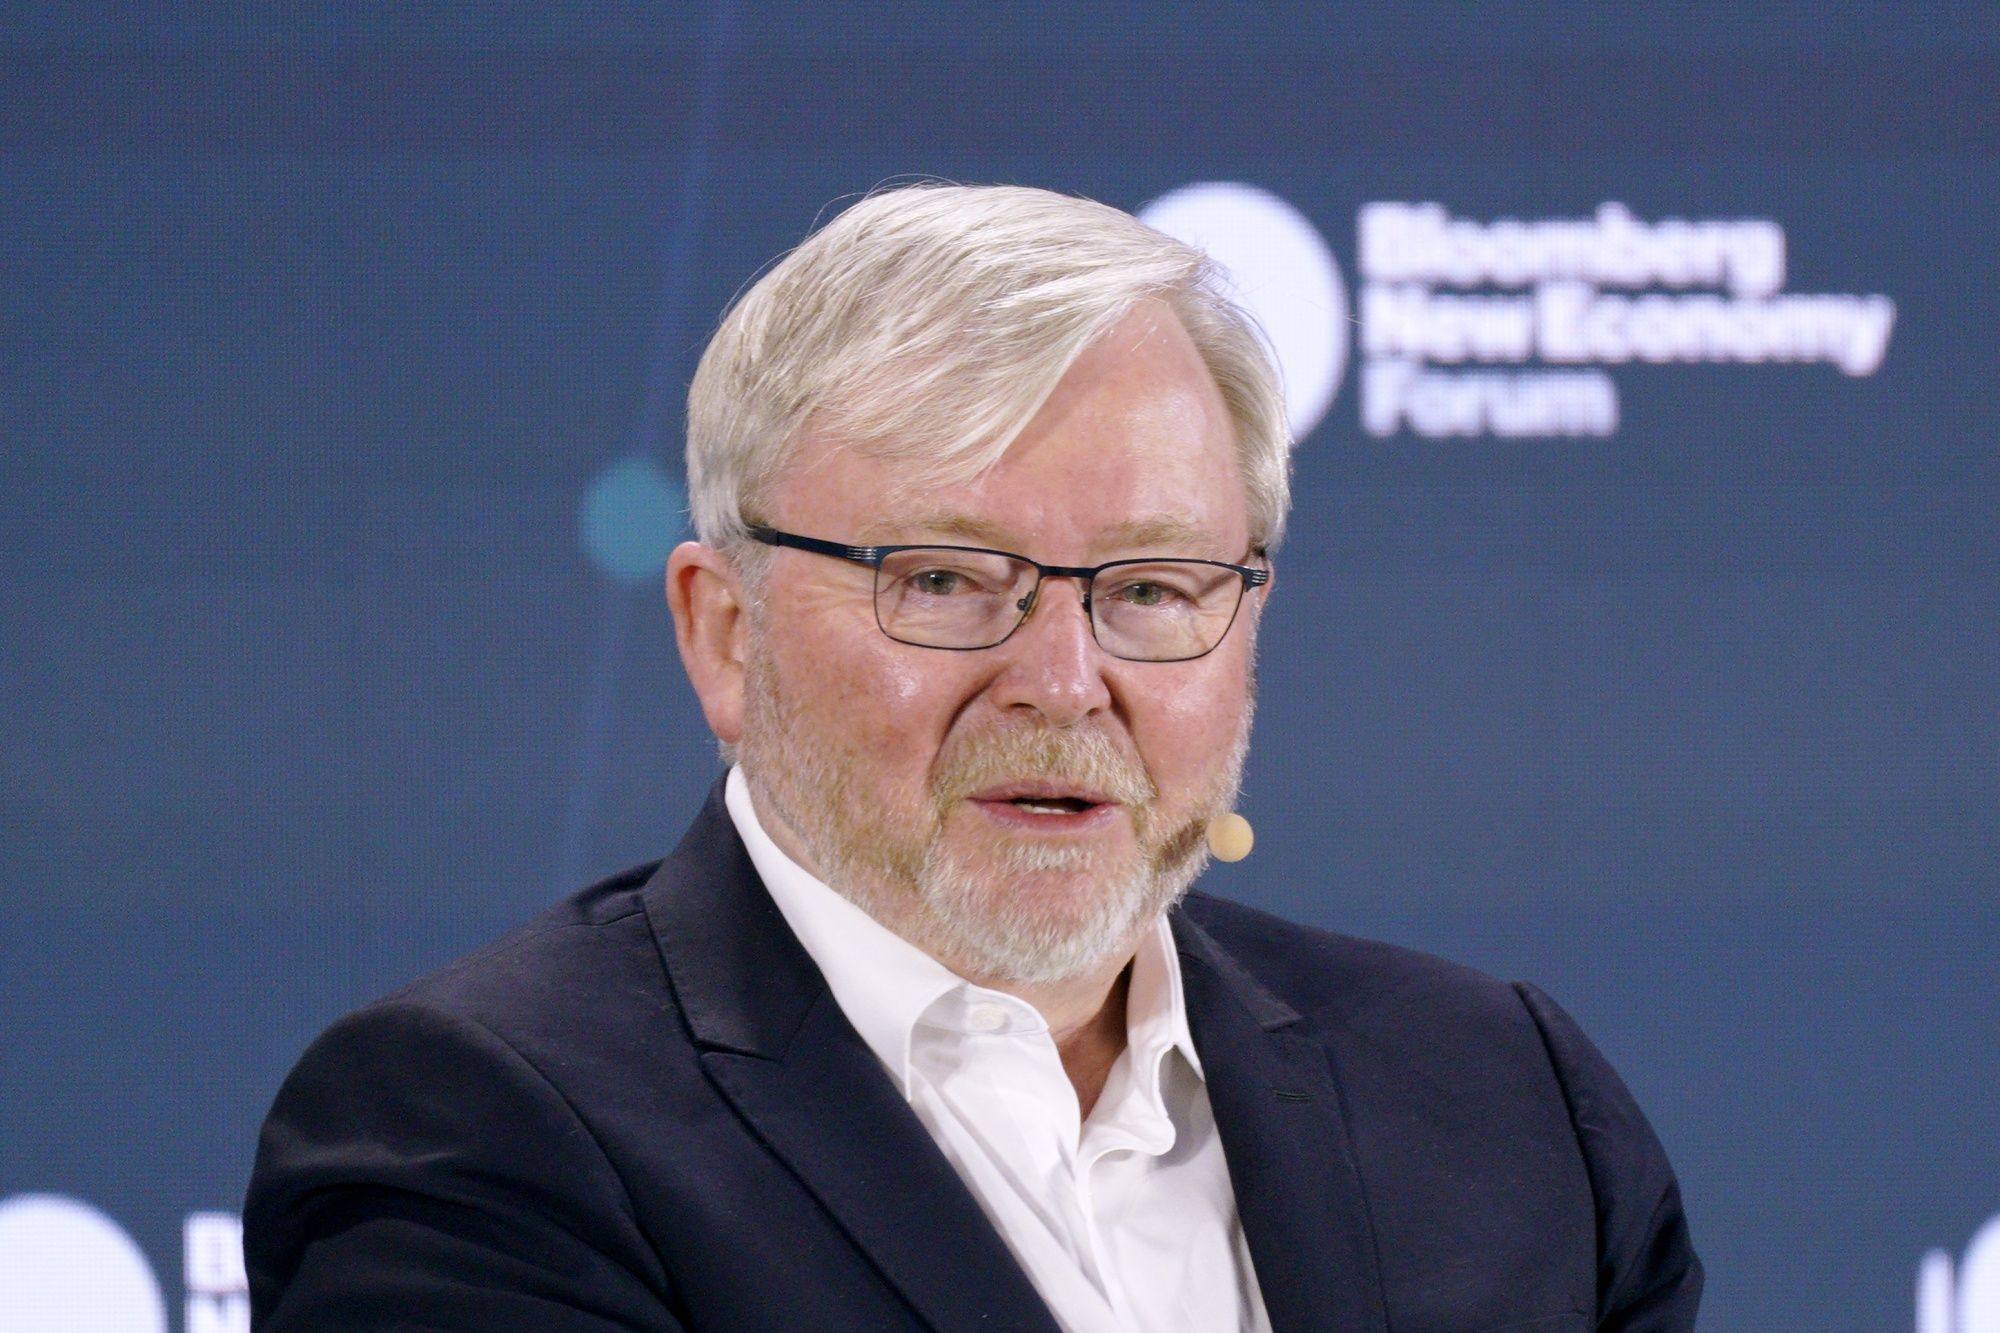 Former Australian Prime Minister Kevin Rudd speaks during the Bloomberg New Economy Forum in Singapore, on Thursday. Photo: Bloomberg